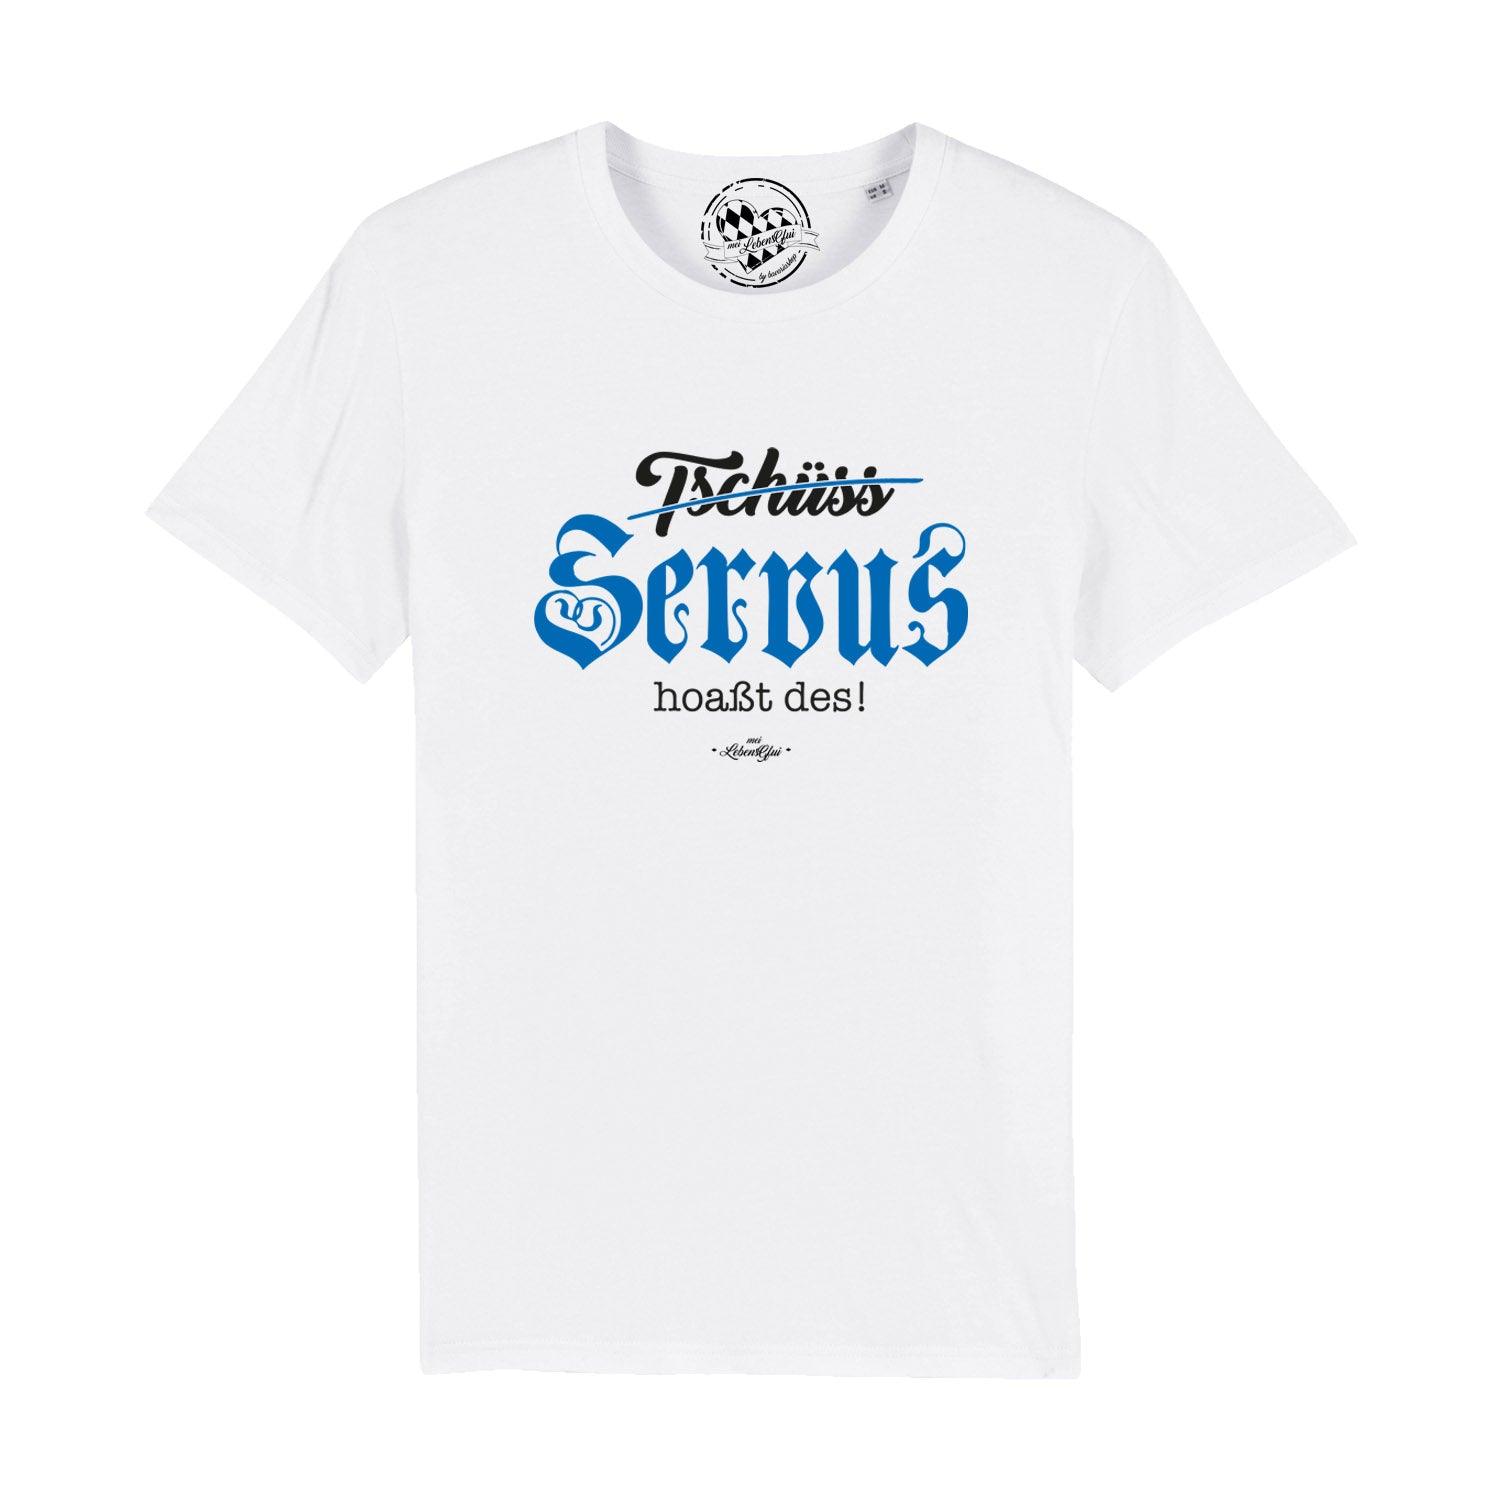 Herren T-Shirt "Servus hoaßt des!" - bavariashop - mei LebensGfui